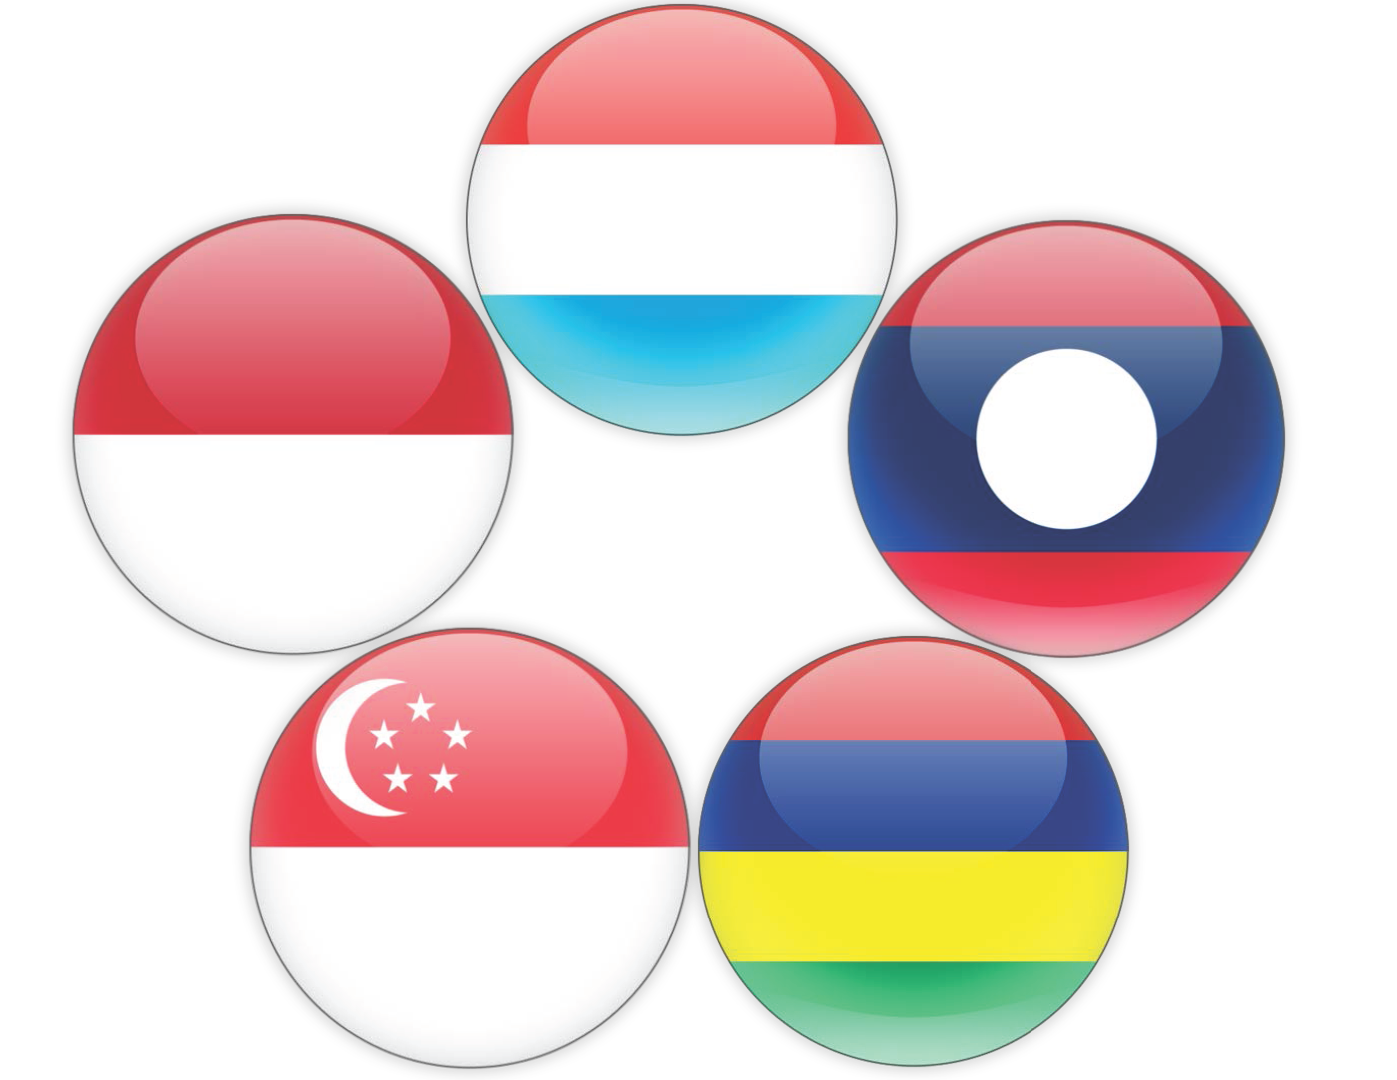 Lao, Luxemburgo, Mauricio, Indonesia y Singapur futuras Partes en el Convenio de Minamata